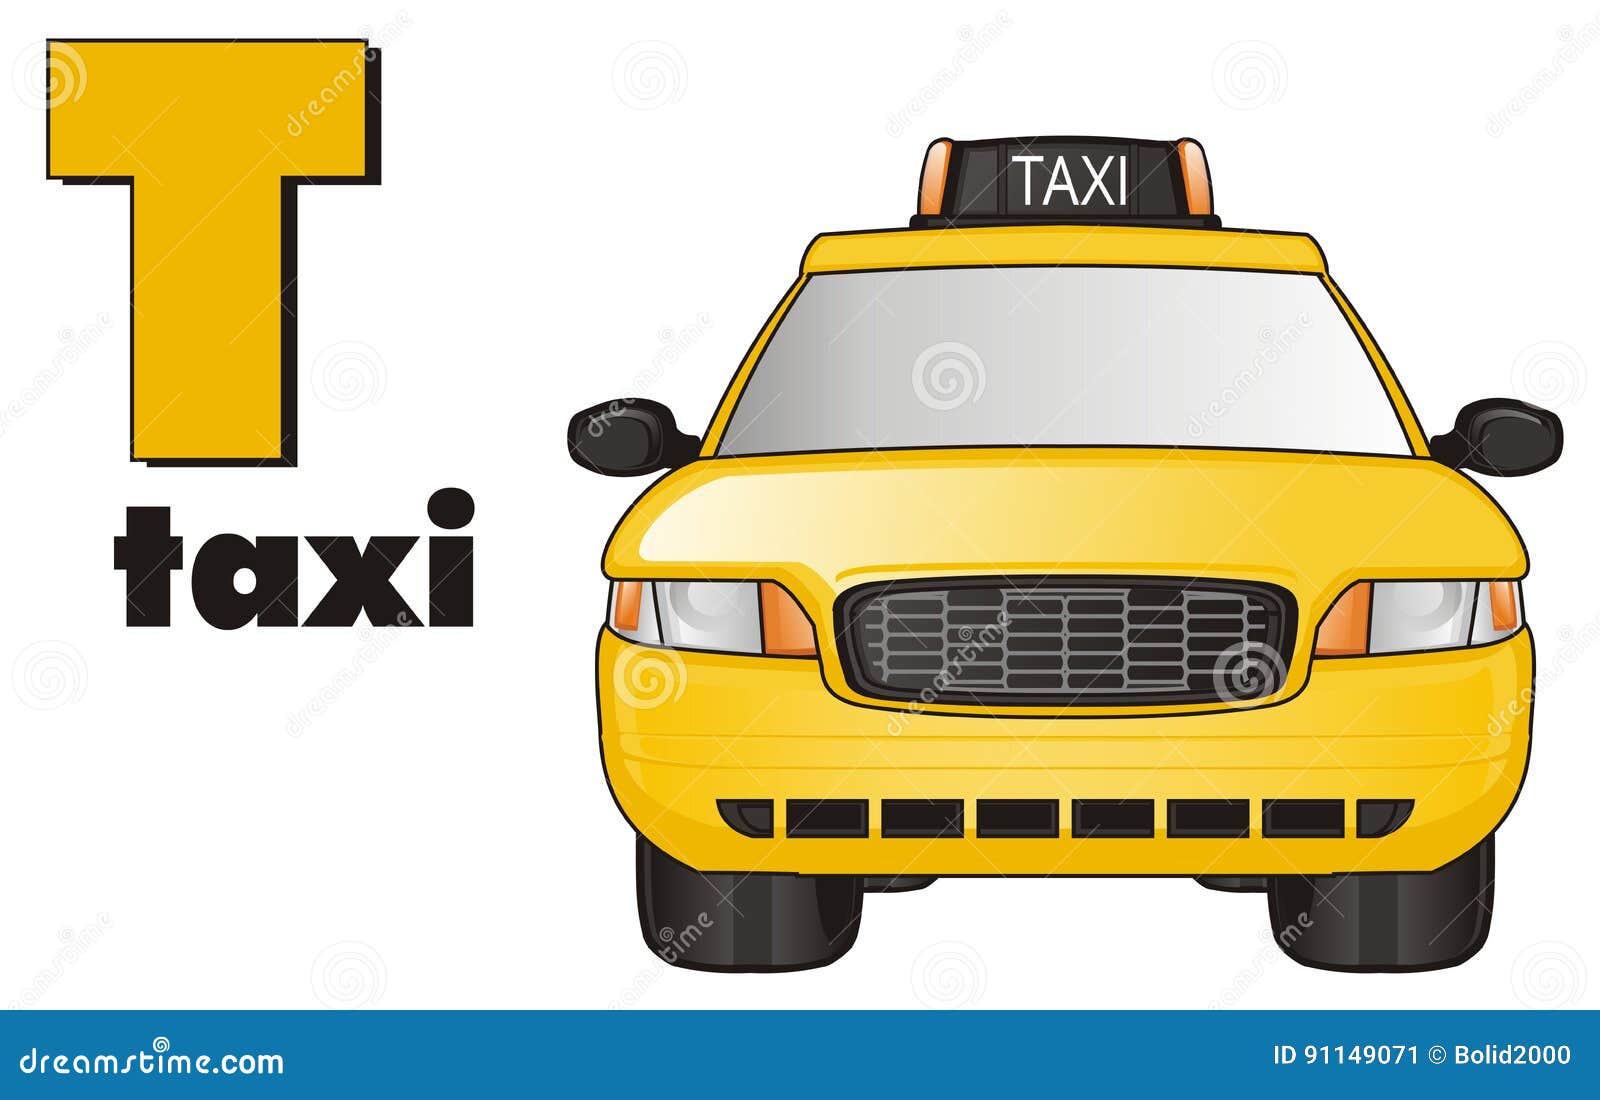 Сравни написание слов такси